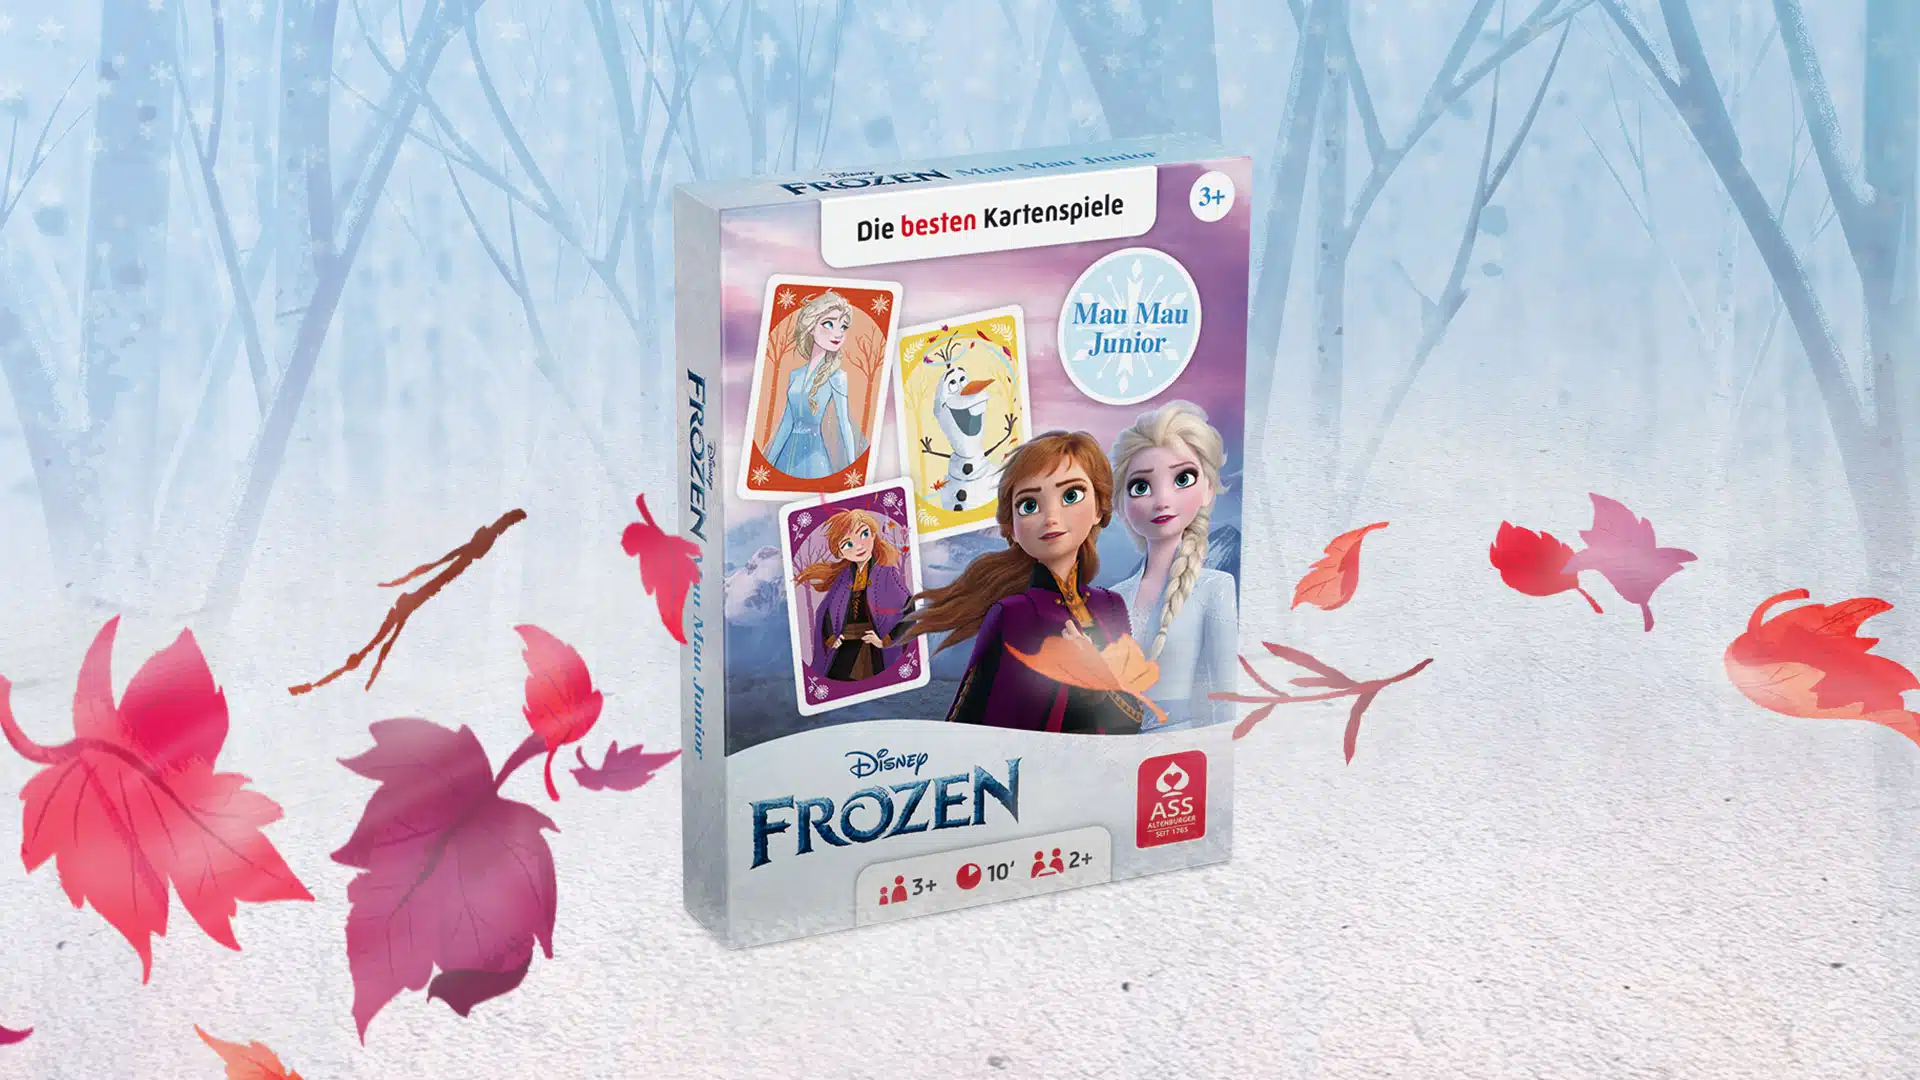 Das Disney Frozen Mau Mau Junior Spiel steht auf einem verschneitem Untergrund. Im Hintergrund ist ein verschneiter Wald zu erkennen, um das Spiel herum fliegen ein paar bunte Laubblätter im Wind.